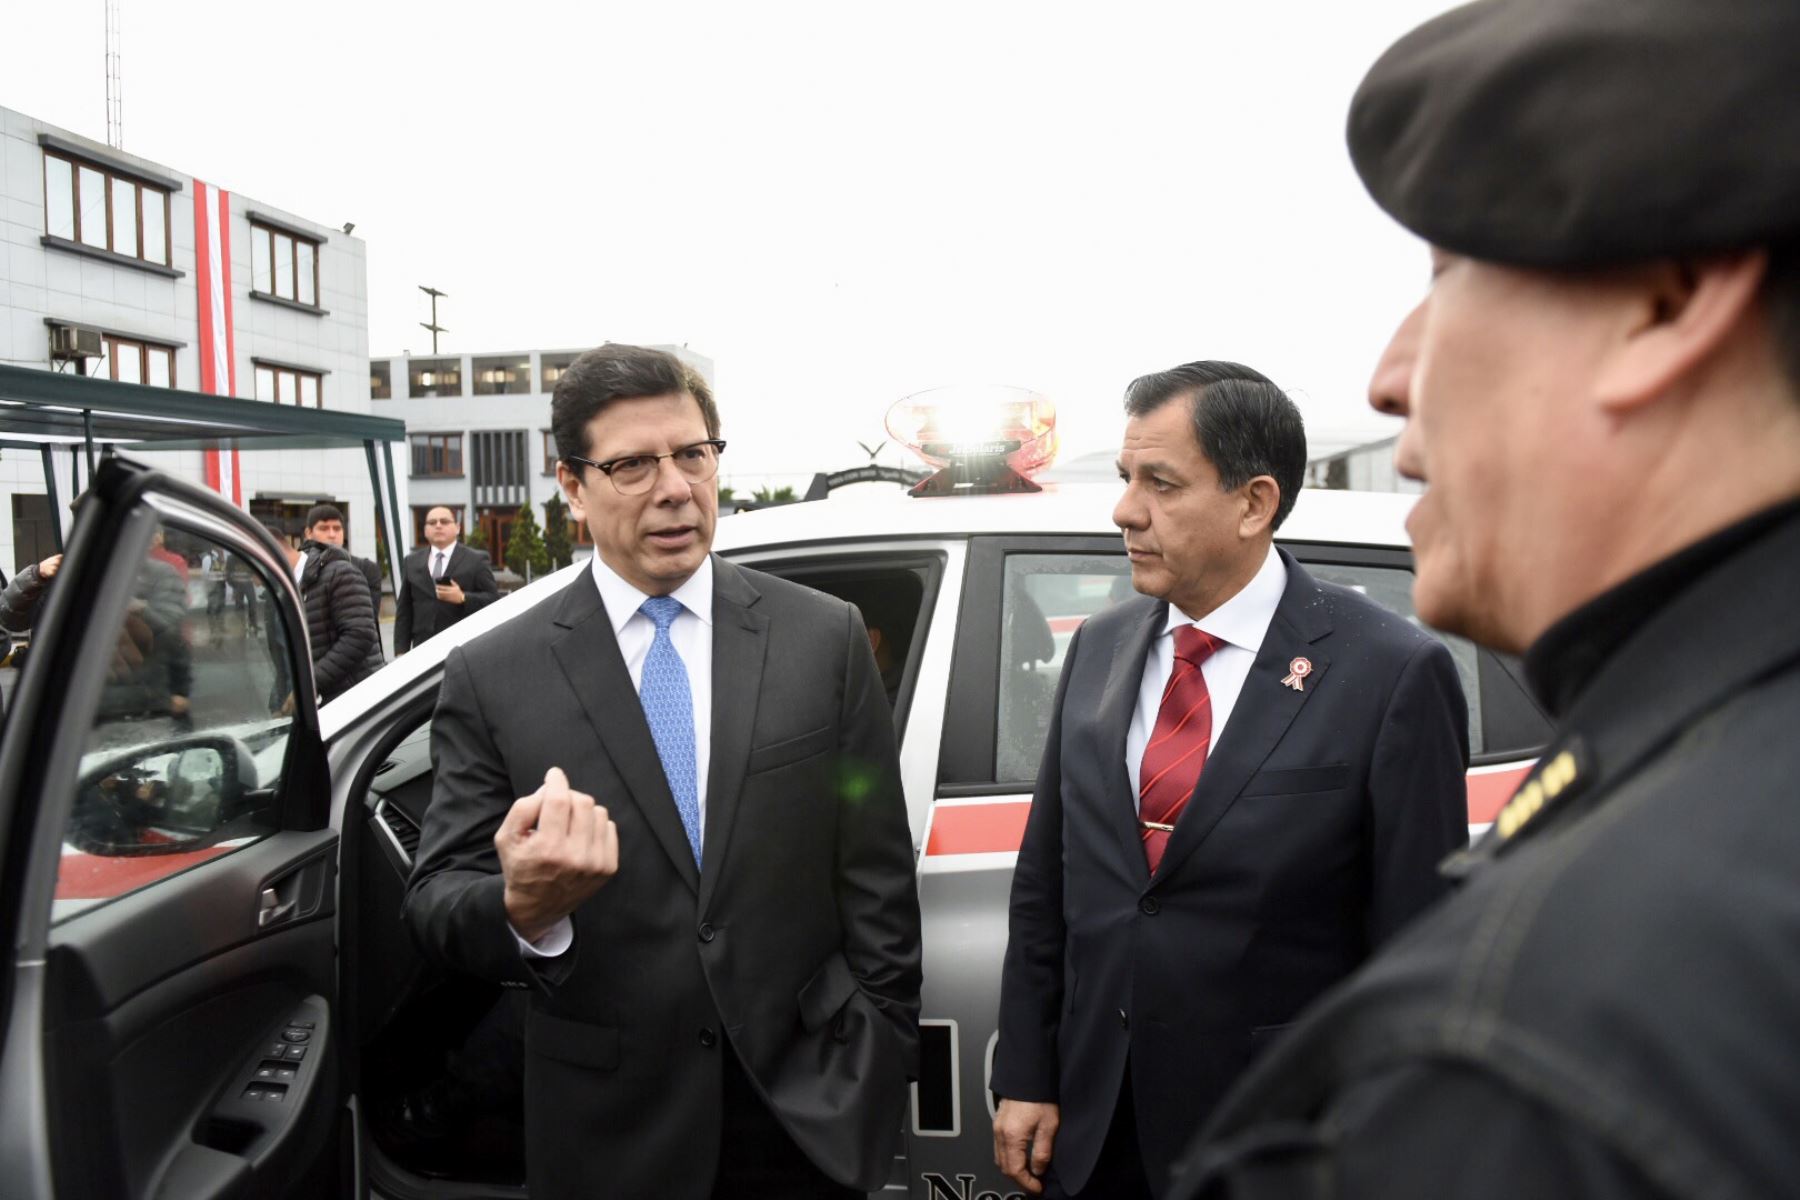 Ministro del Interior Mauro Medina participa en ceremonia de entrega de patrulleros al Departamento de Seguridad de Bancos Aguilas Negras de la Policía Peru por parte de asbanc peru. Foto: ANDINA/Mininter